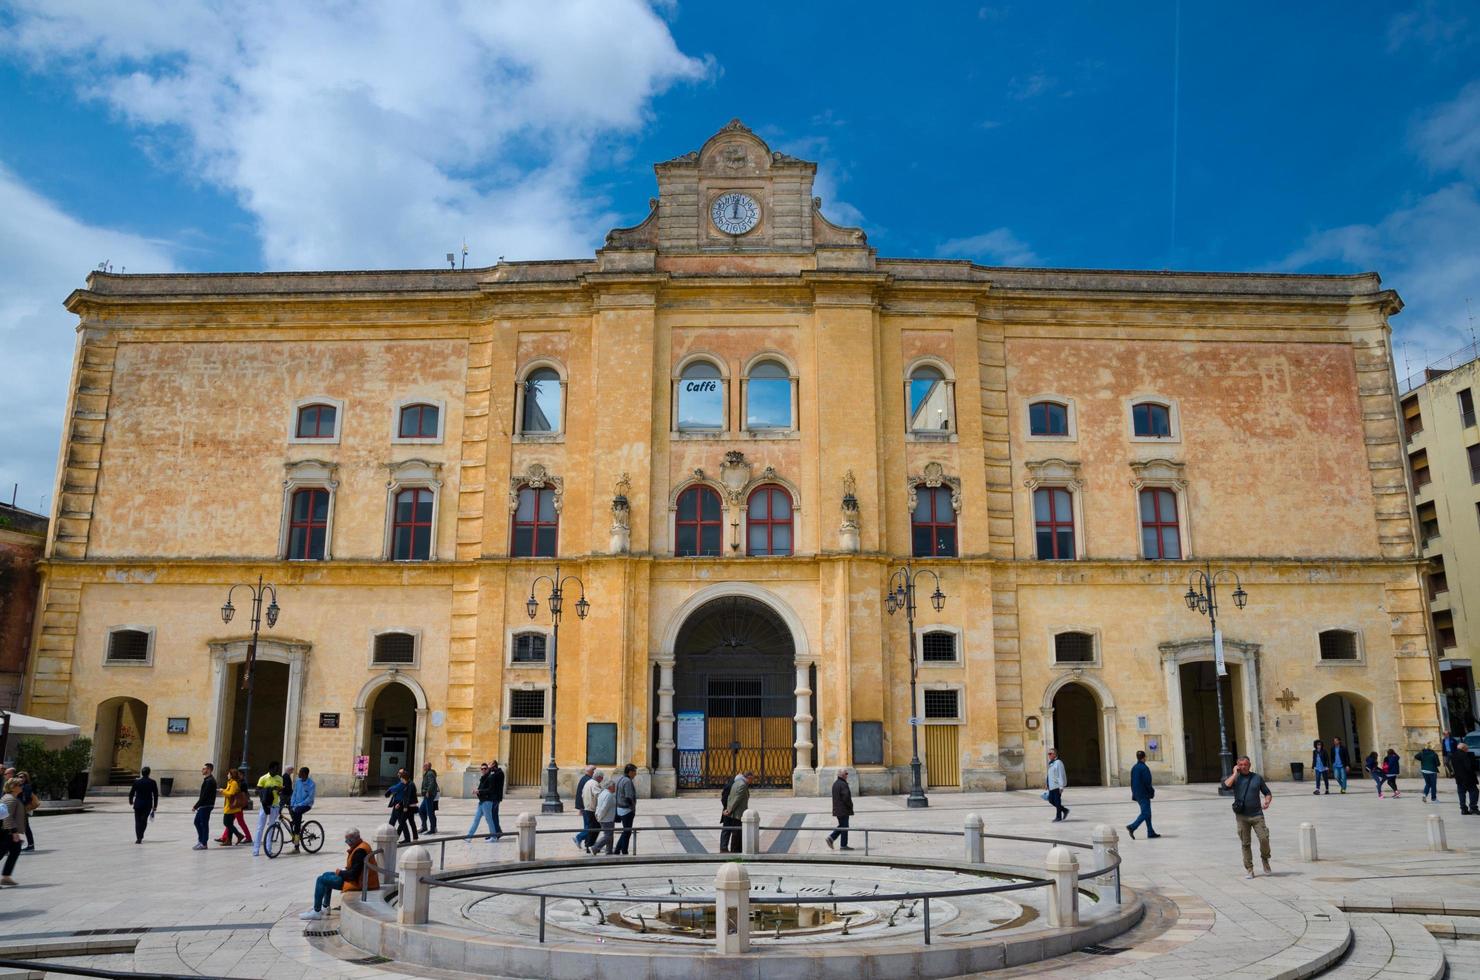 Matera, Italië - 6 mei 2018 mensen lopen in de buurt van bioscoop comunale palazzo dell'annunziata paleis met klok op gevel en fontein op piazza vittorio veneto vierkante blauwe hemelachtergrond foto